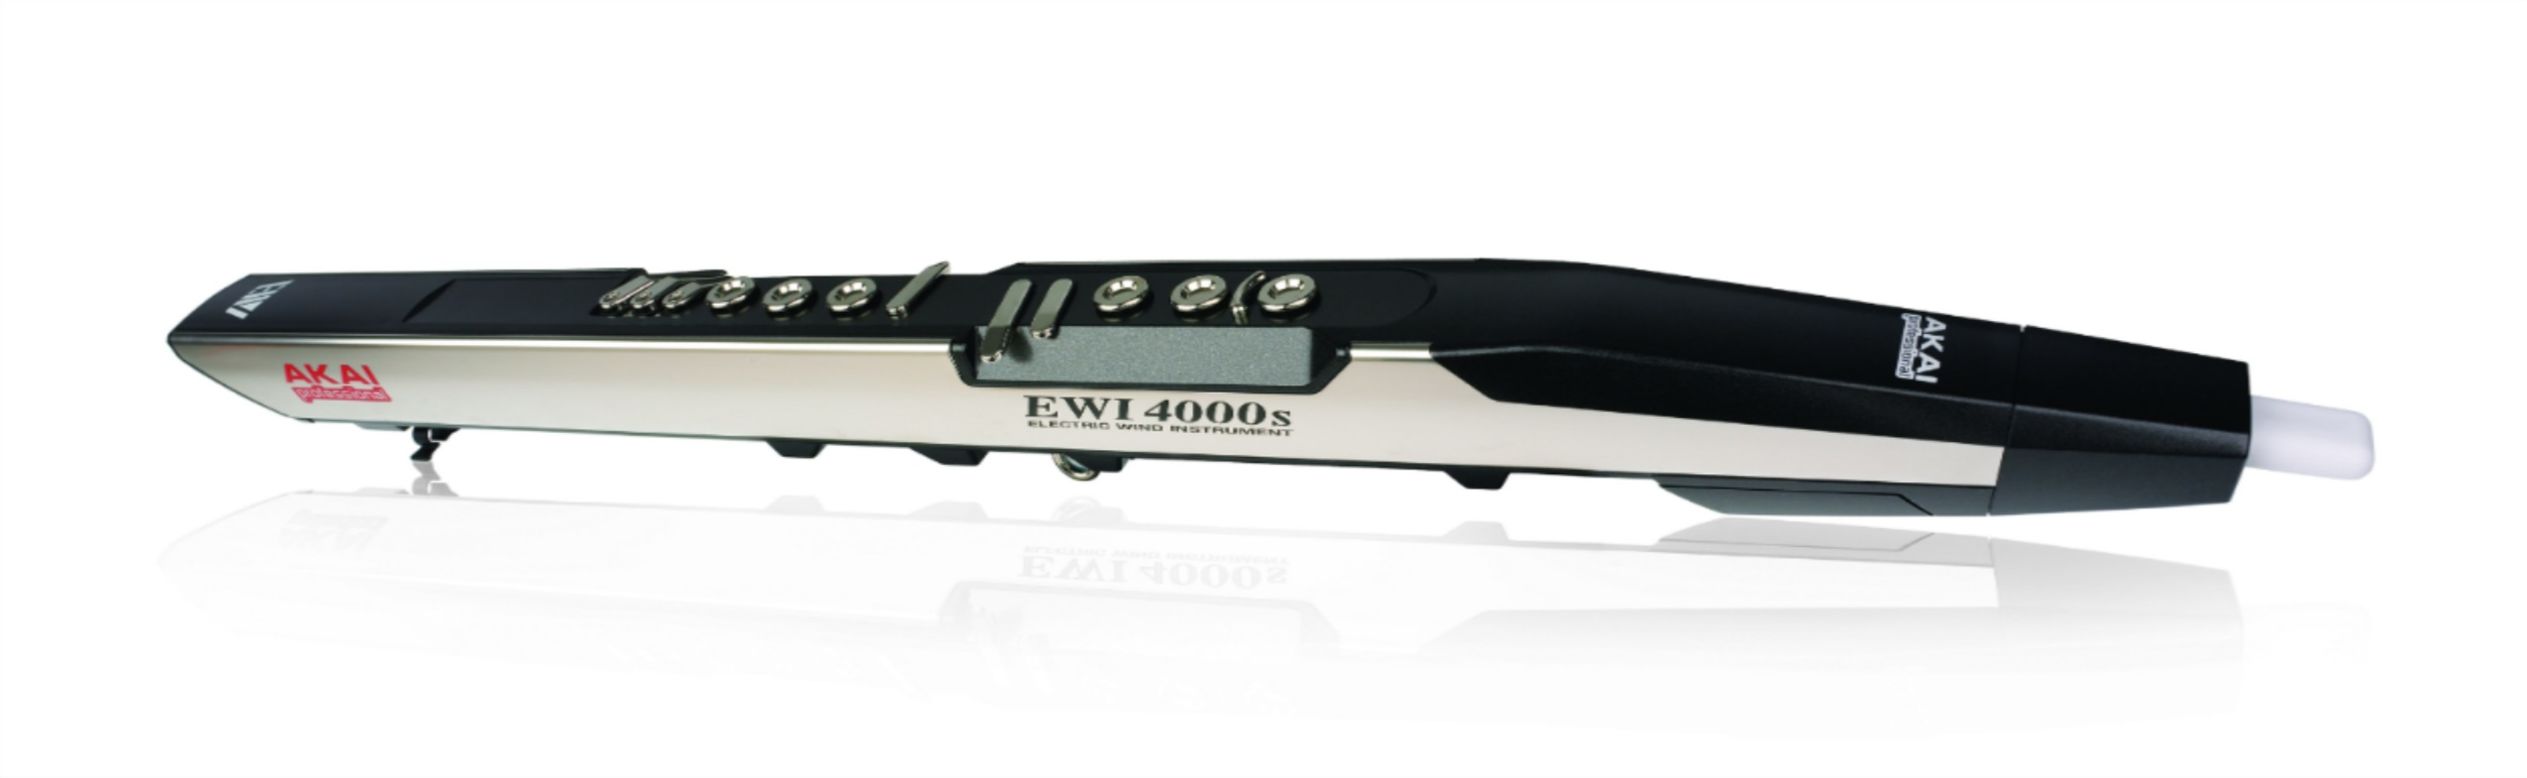 El EWI4000S de Akai fue diseñado para ser una "evolución de los instrumentos de viento".